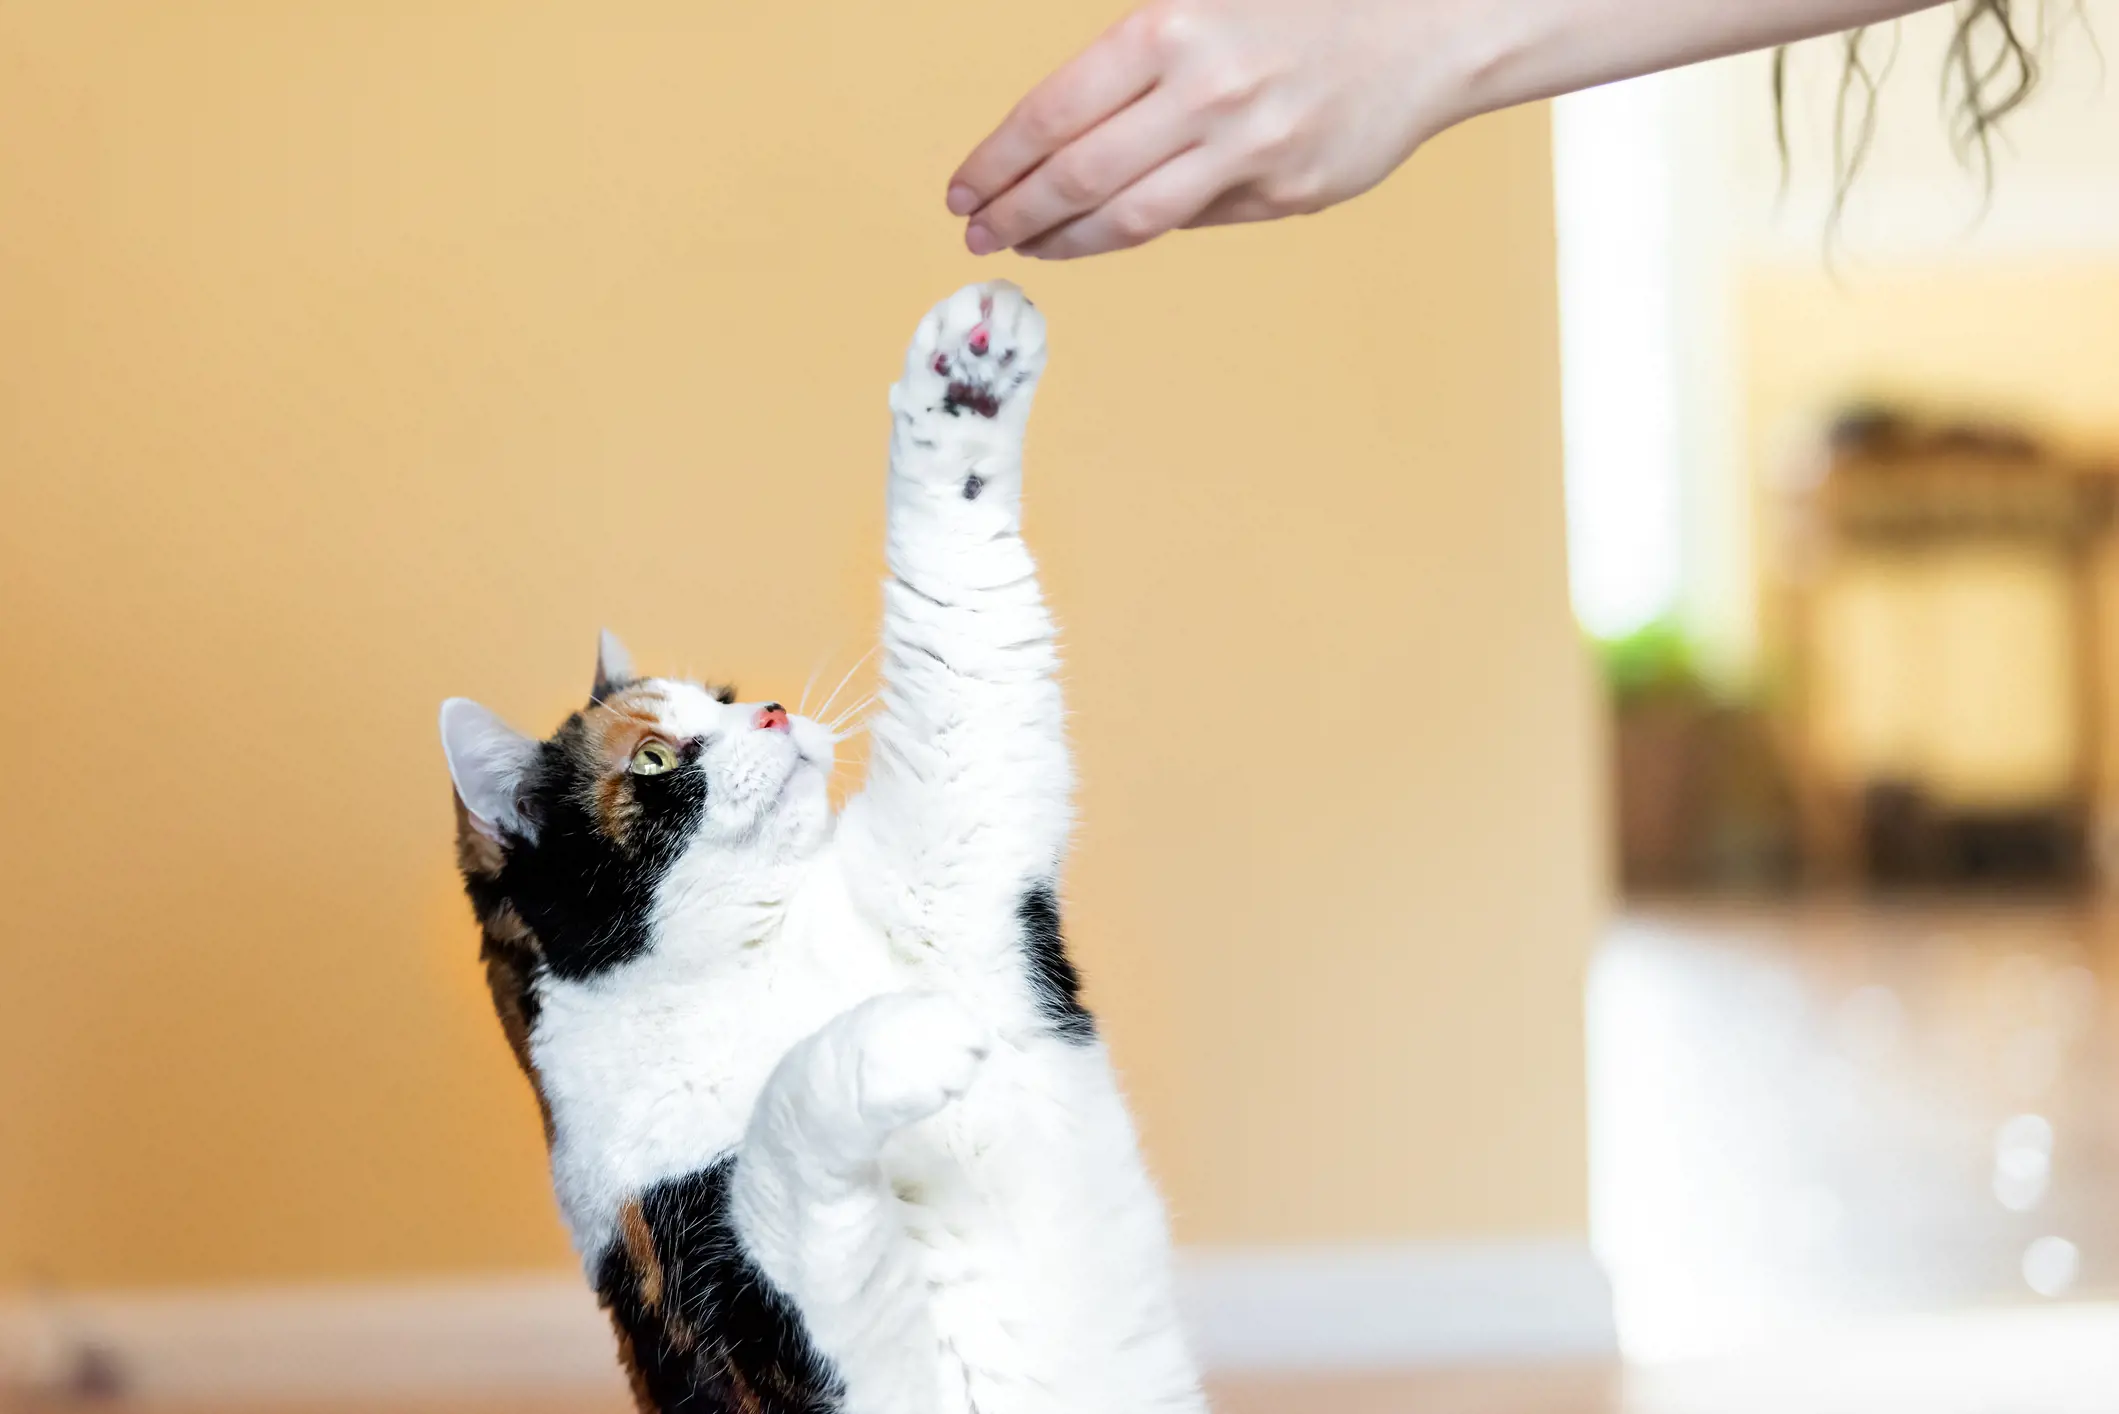 cat paw touching hand